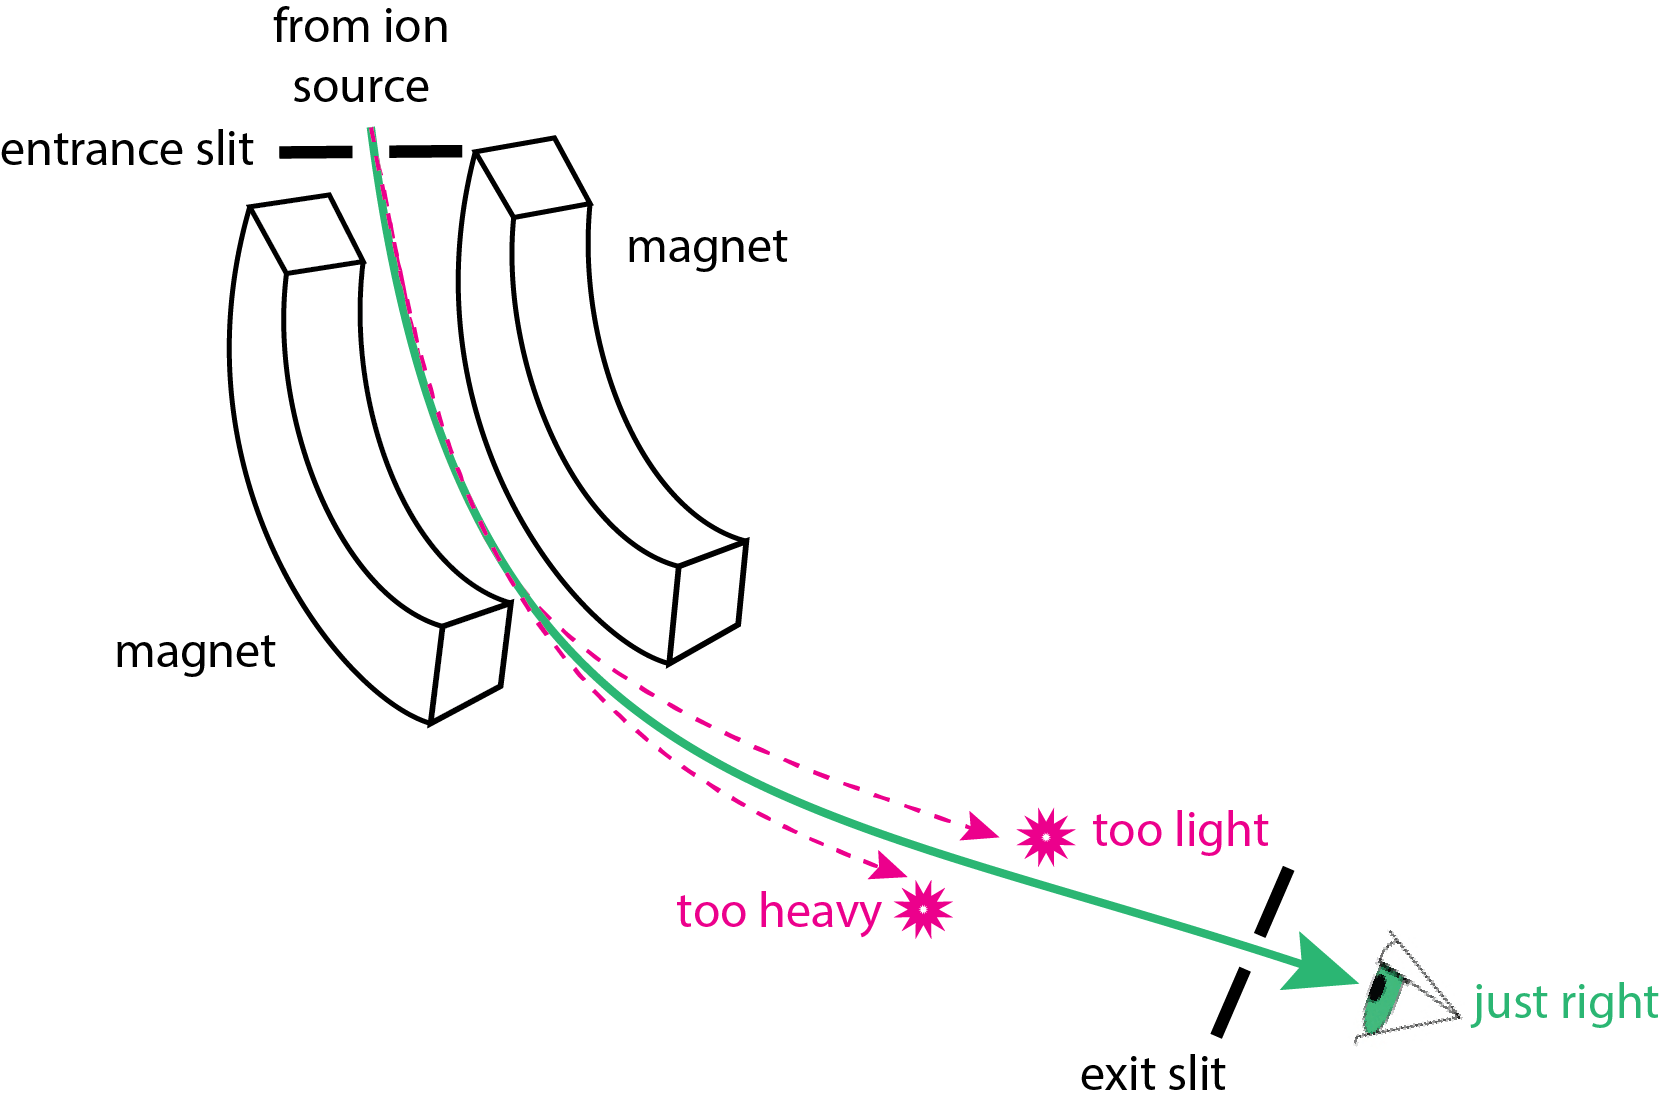 Ilustración de un analizador de sector magnético para espectrometría de masas. Los iones de la fuente de iones entran en el analizador de masas. Los imanes en el analizador de masas doblan la trayectoria seguida por los iones. Para cualquier combinación de intensidad de campo magnético y voltaje de aceleración, solo los iones con una relación masa-carga compatible pueden salir del analizador de masas a través de la ranura de salida; los iones que son demasiado pesados o demasiado ligeros, no logran salir del analizador de masas.